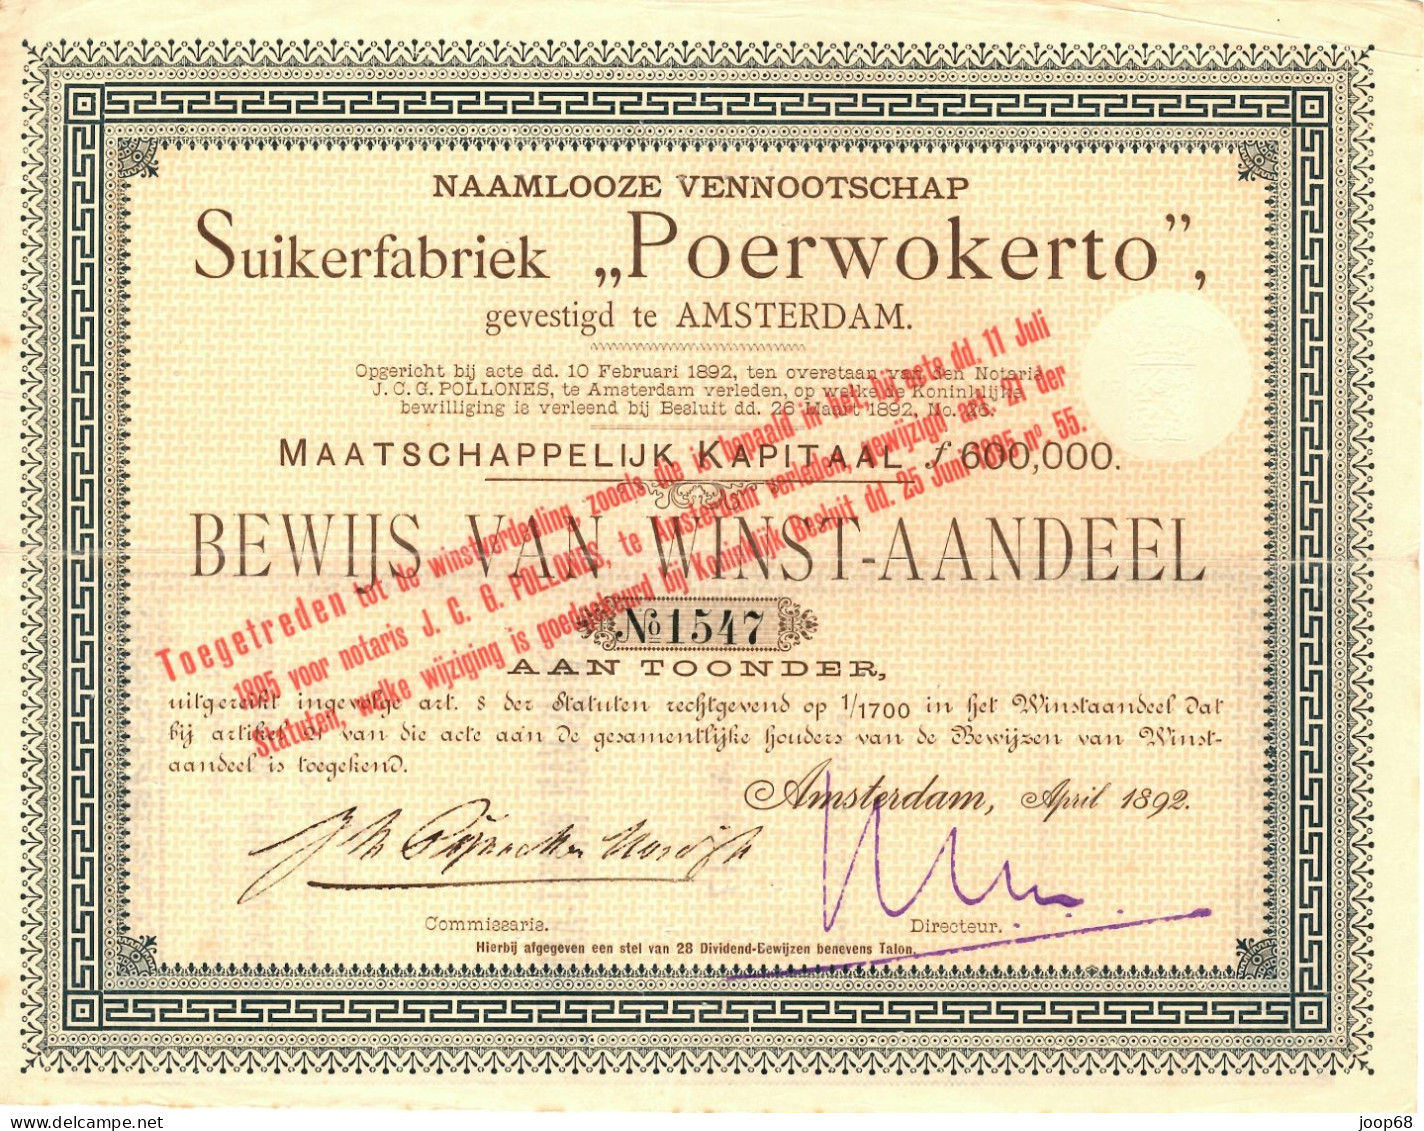 Suikerfabriek "Poerwokerto" N.V. - Winst-Aandeel - Amsterdam, April 1892 Indonesia - Agricultura